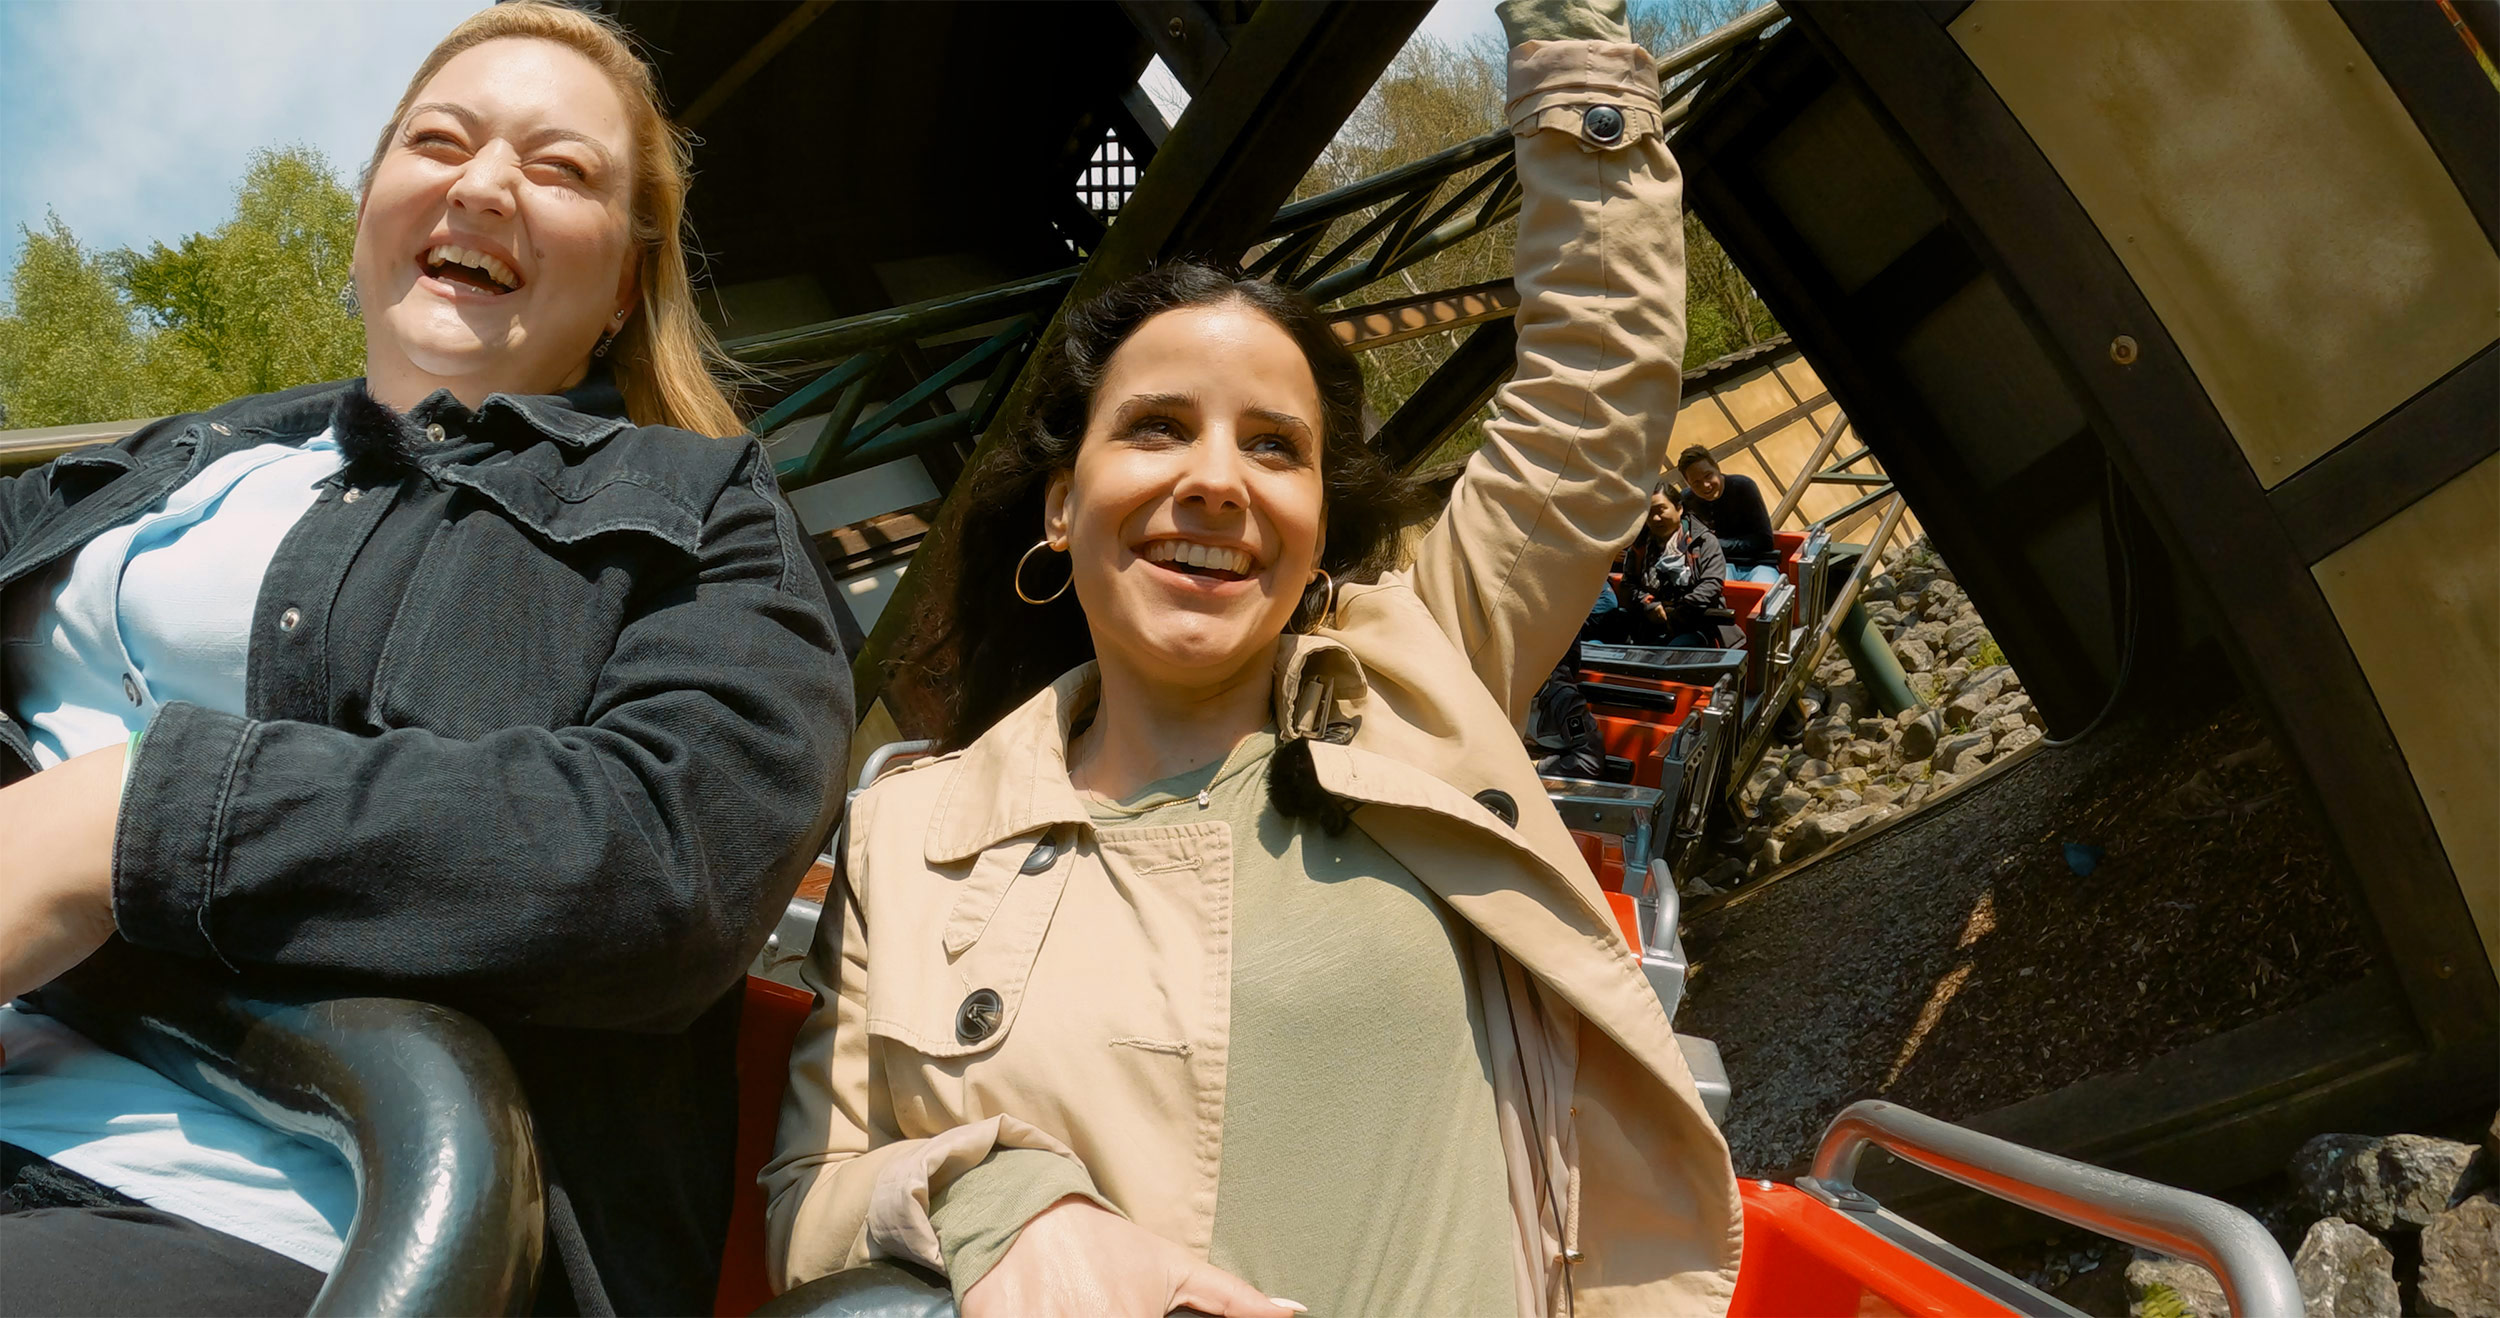 Zwei Frauen, die in der Achterbahn "Drachenjagd" des LEGOLAND Deutschlands sitzen und lachen, wobei die Frau rechts ihre rechte Hand festhält und ihre linke Hand in die Luft hebt, während im Hintergrund die Wagen des Fahrgeschäfts und die Schienen der Achterbahn zu sehen sind.